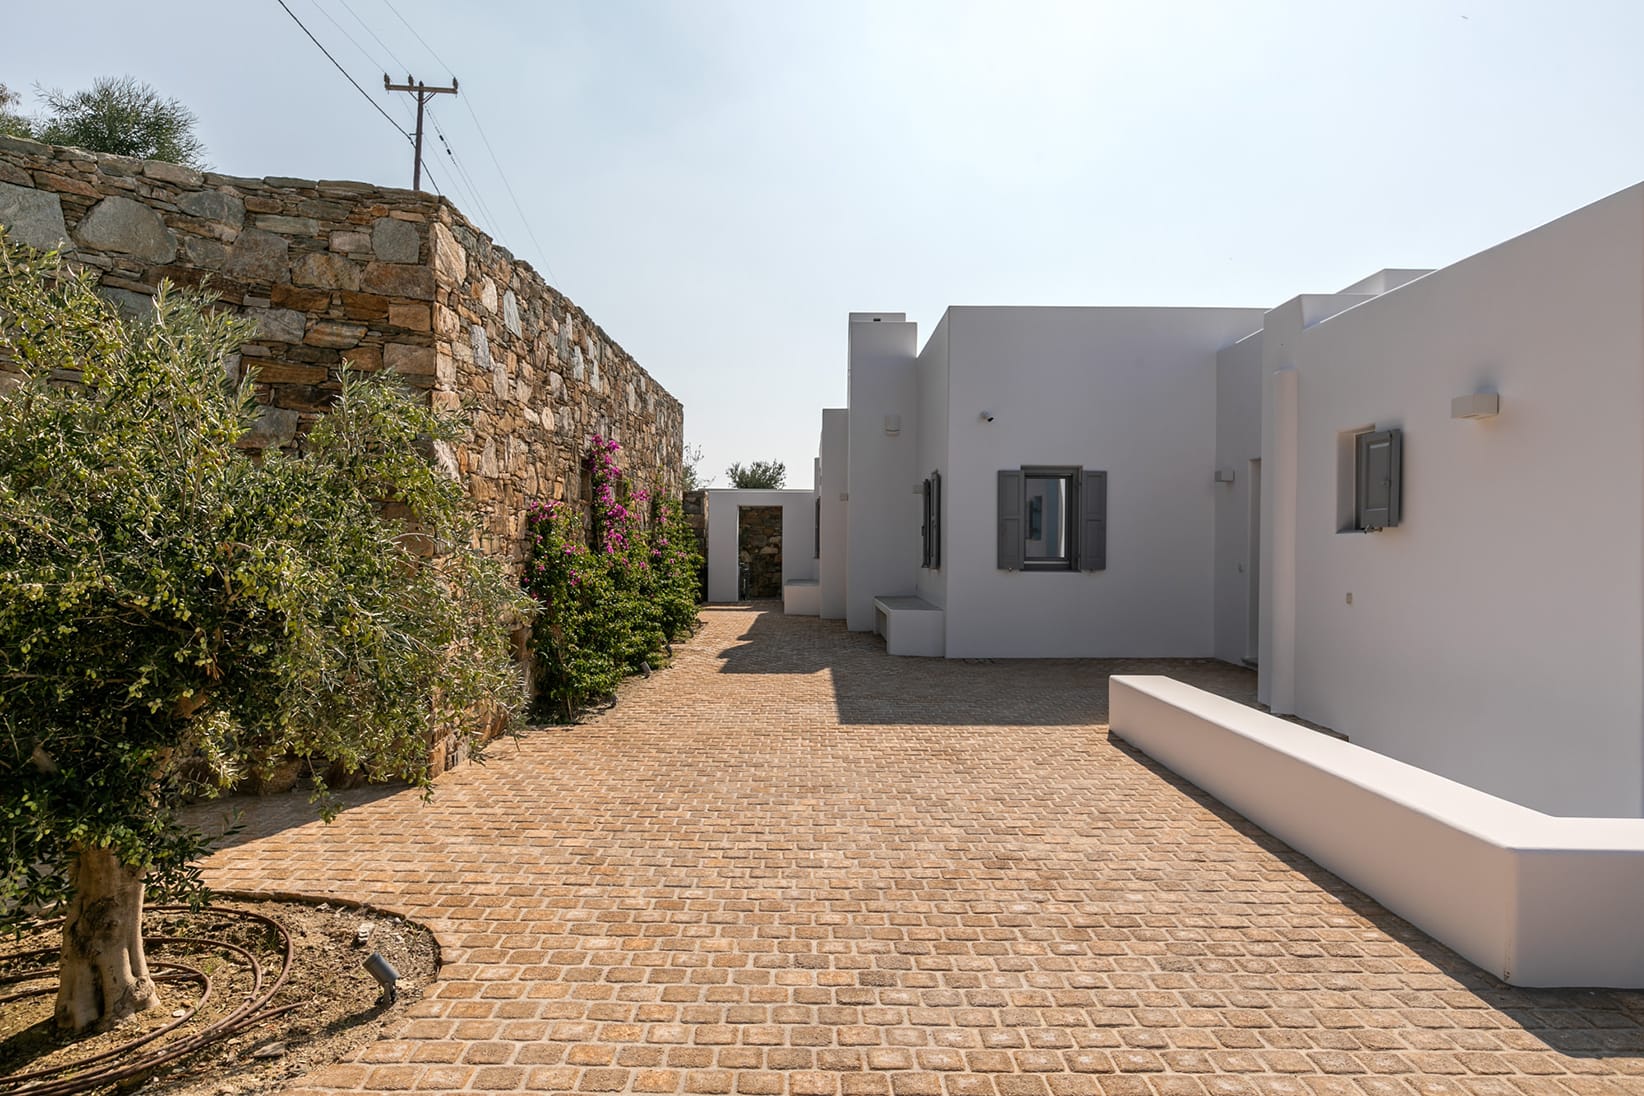 Evripiotis Architects--Villa Aktaia, Syros Island